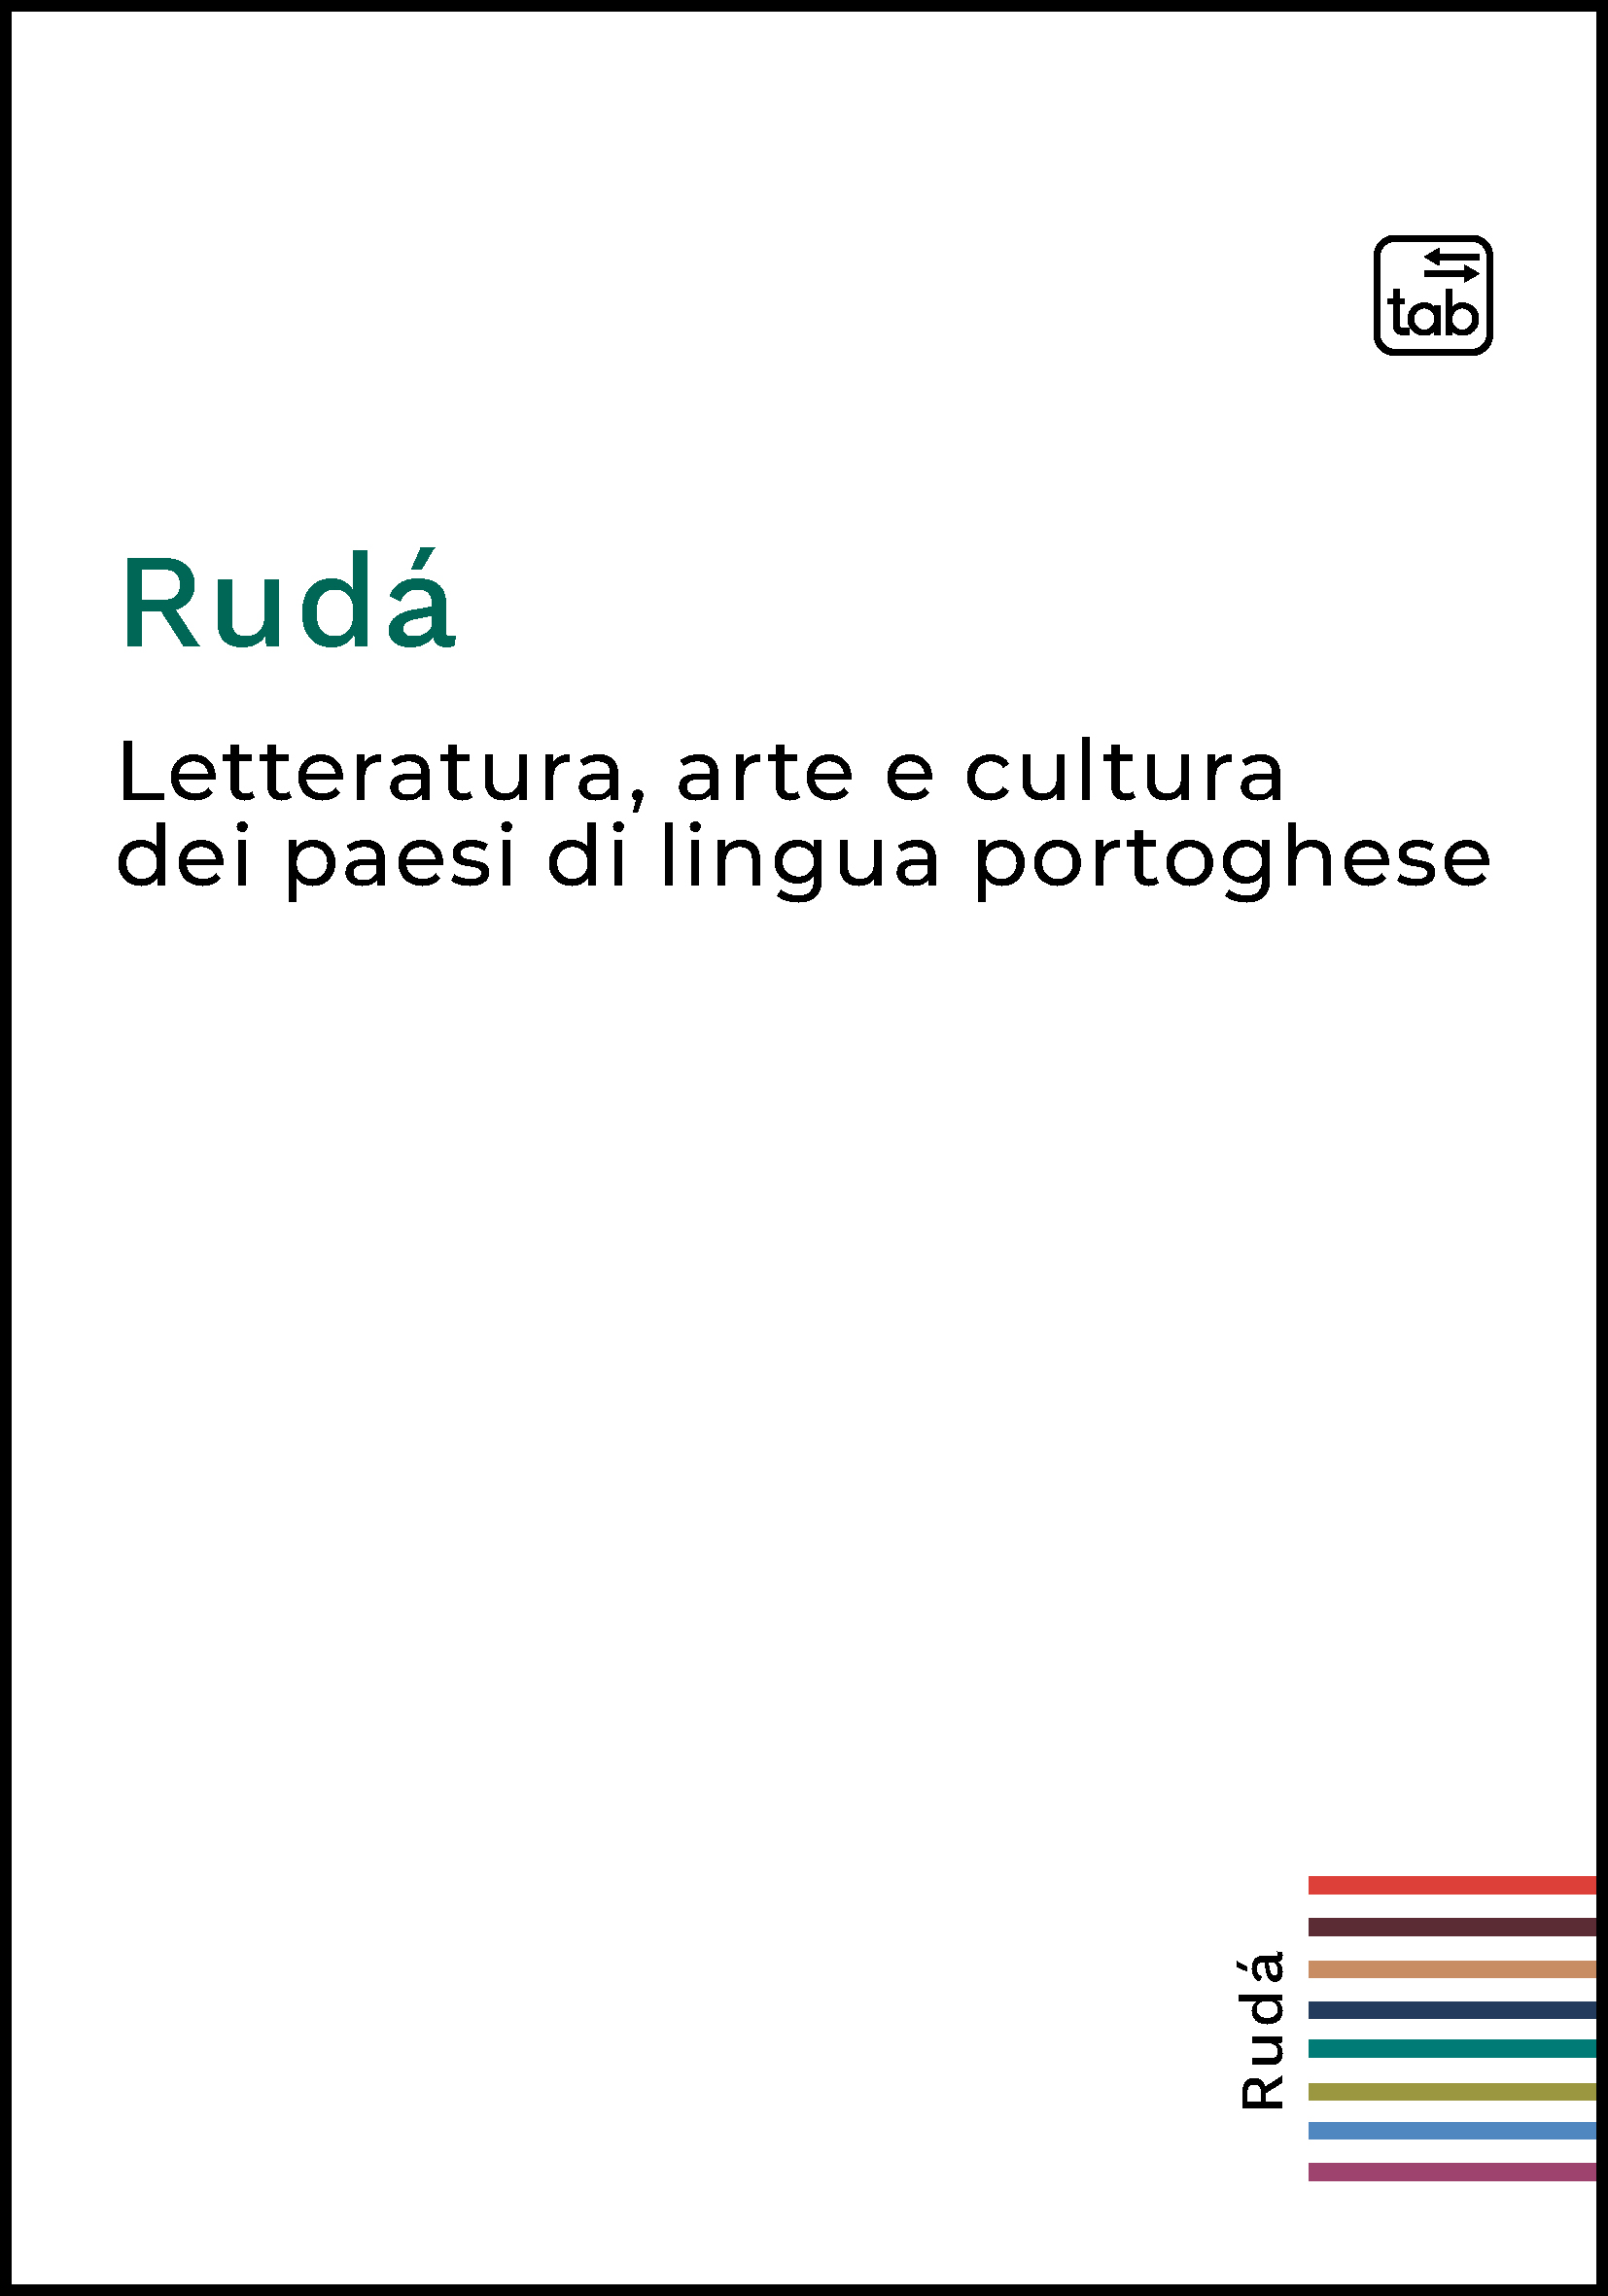 Geografias literárias de língua portuguesa no século XXI